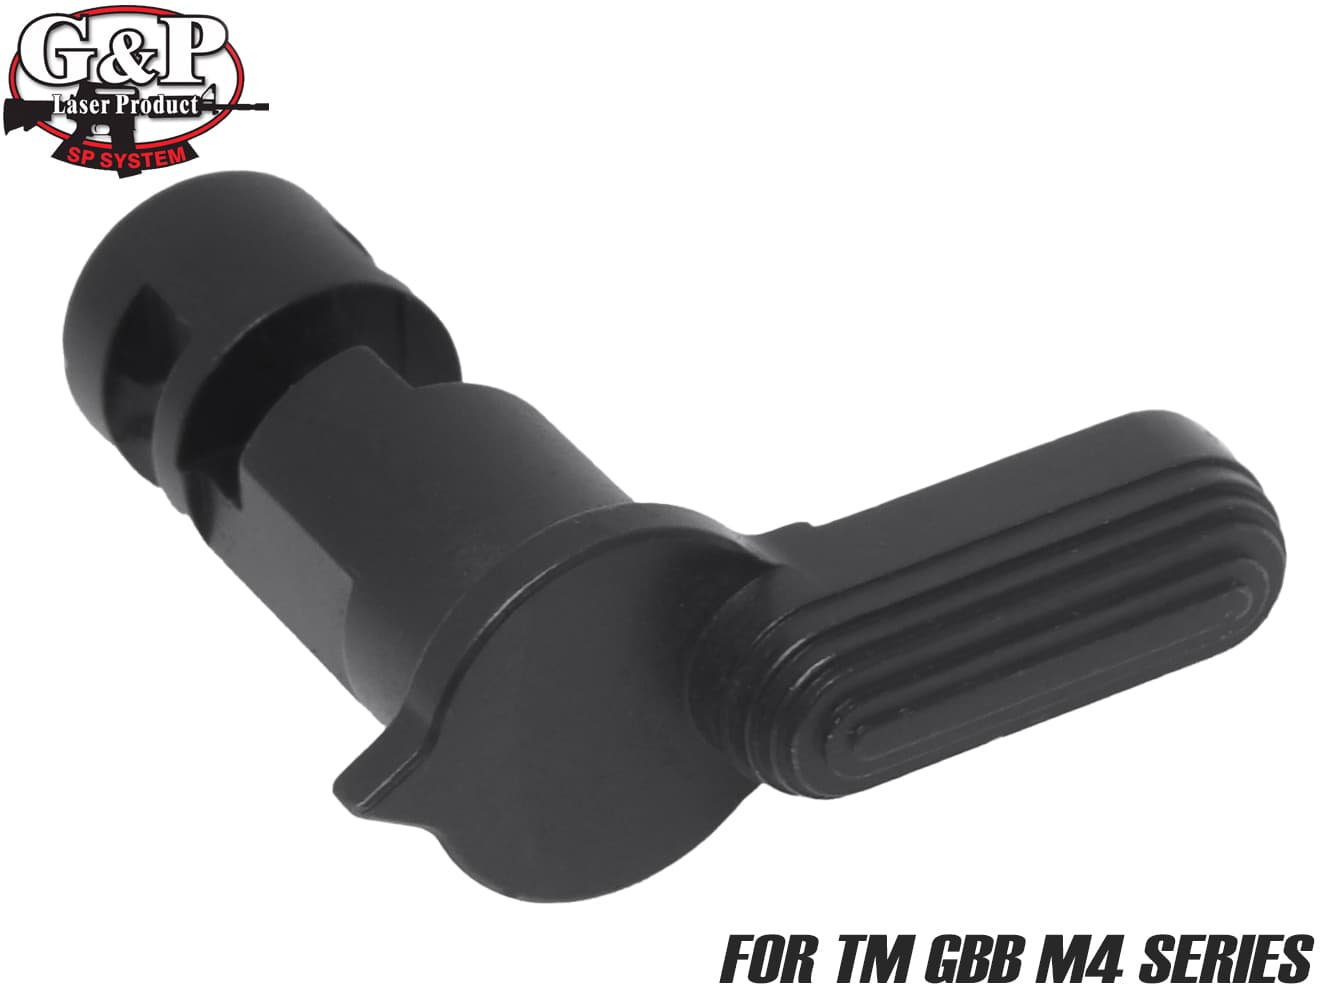 G&P スチール セレクターレバー for TM GBB M4◆スチール製 steel 質感 強度 強化 向上 黒染 質感 耐久性 こだわり カスタム パーツ 塗装 ガスブローバック